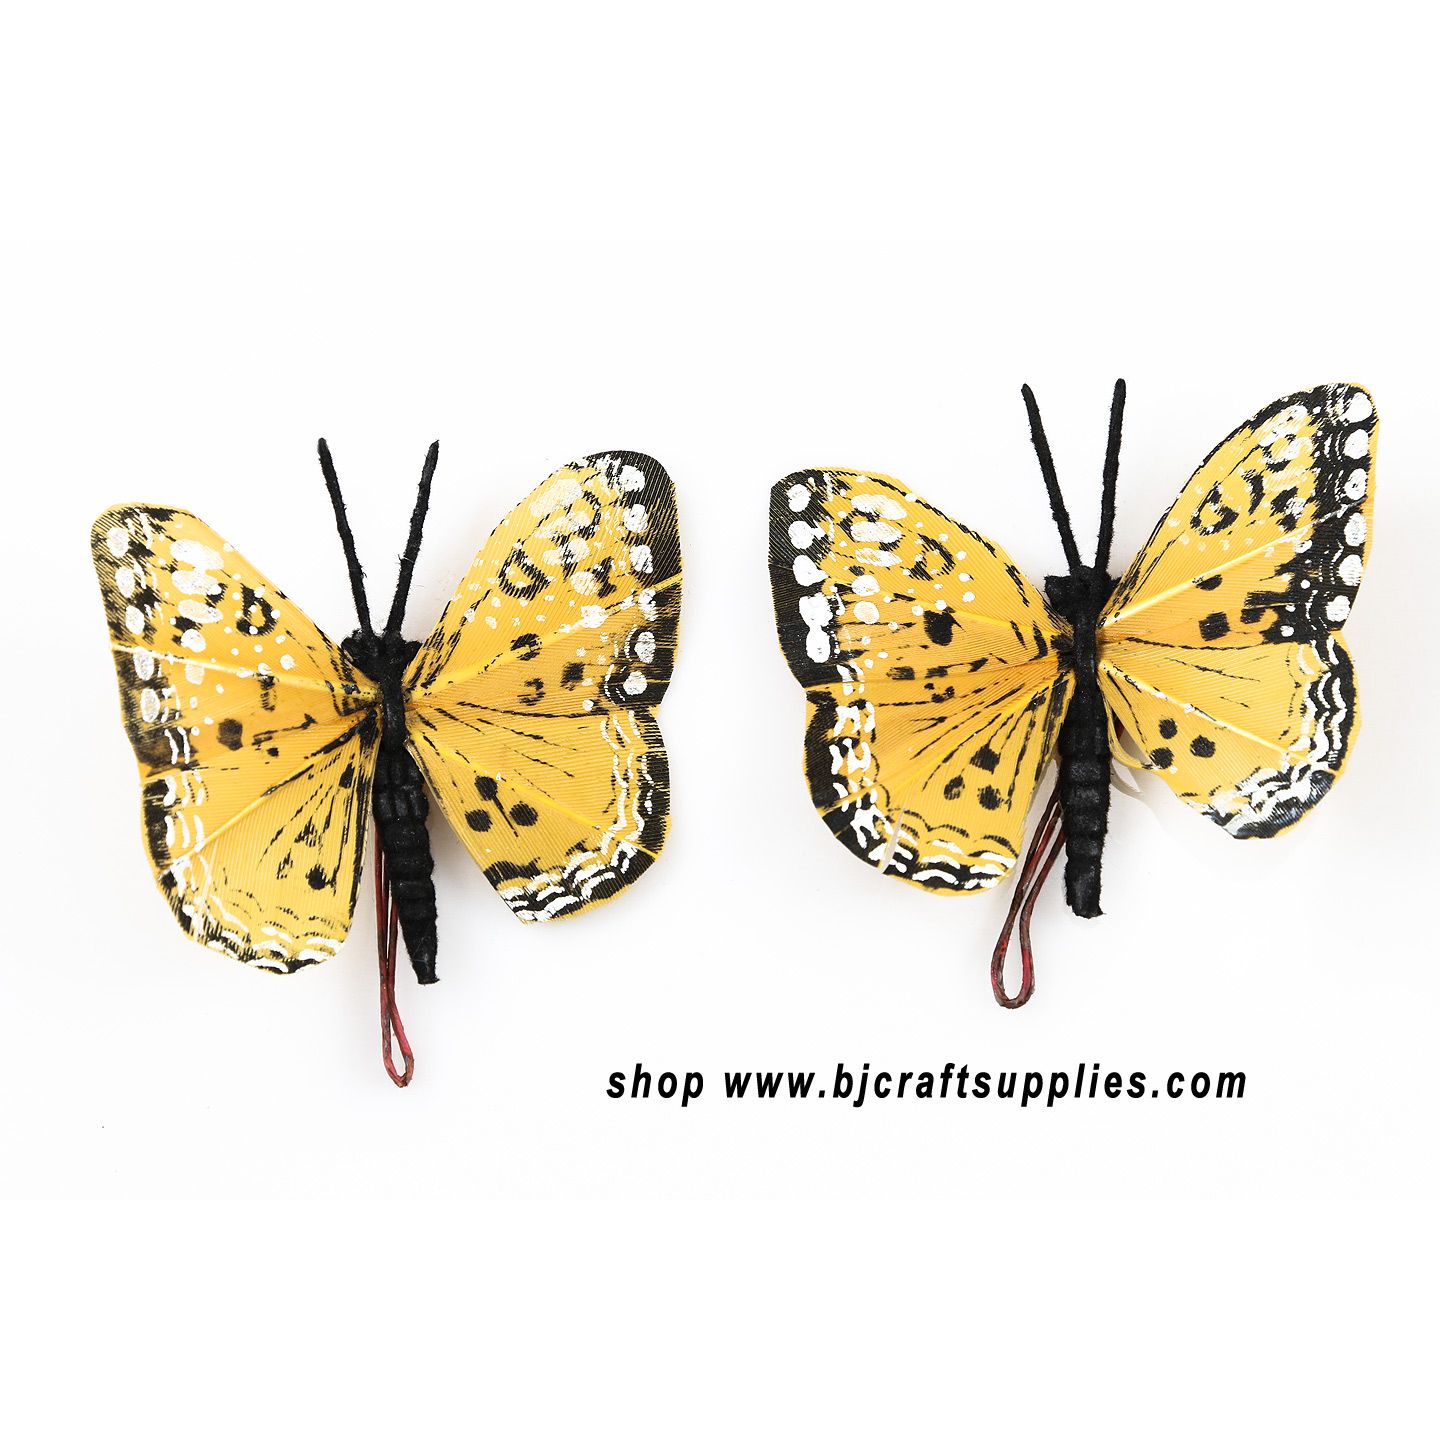 Decorative Butterflies - Artificial Butterflies - Butterflies for Crafts - Fake Butterfiles